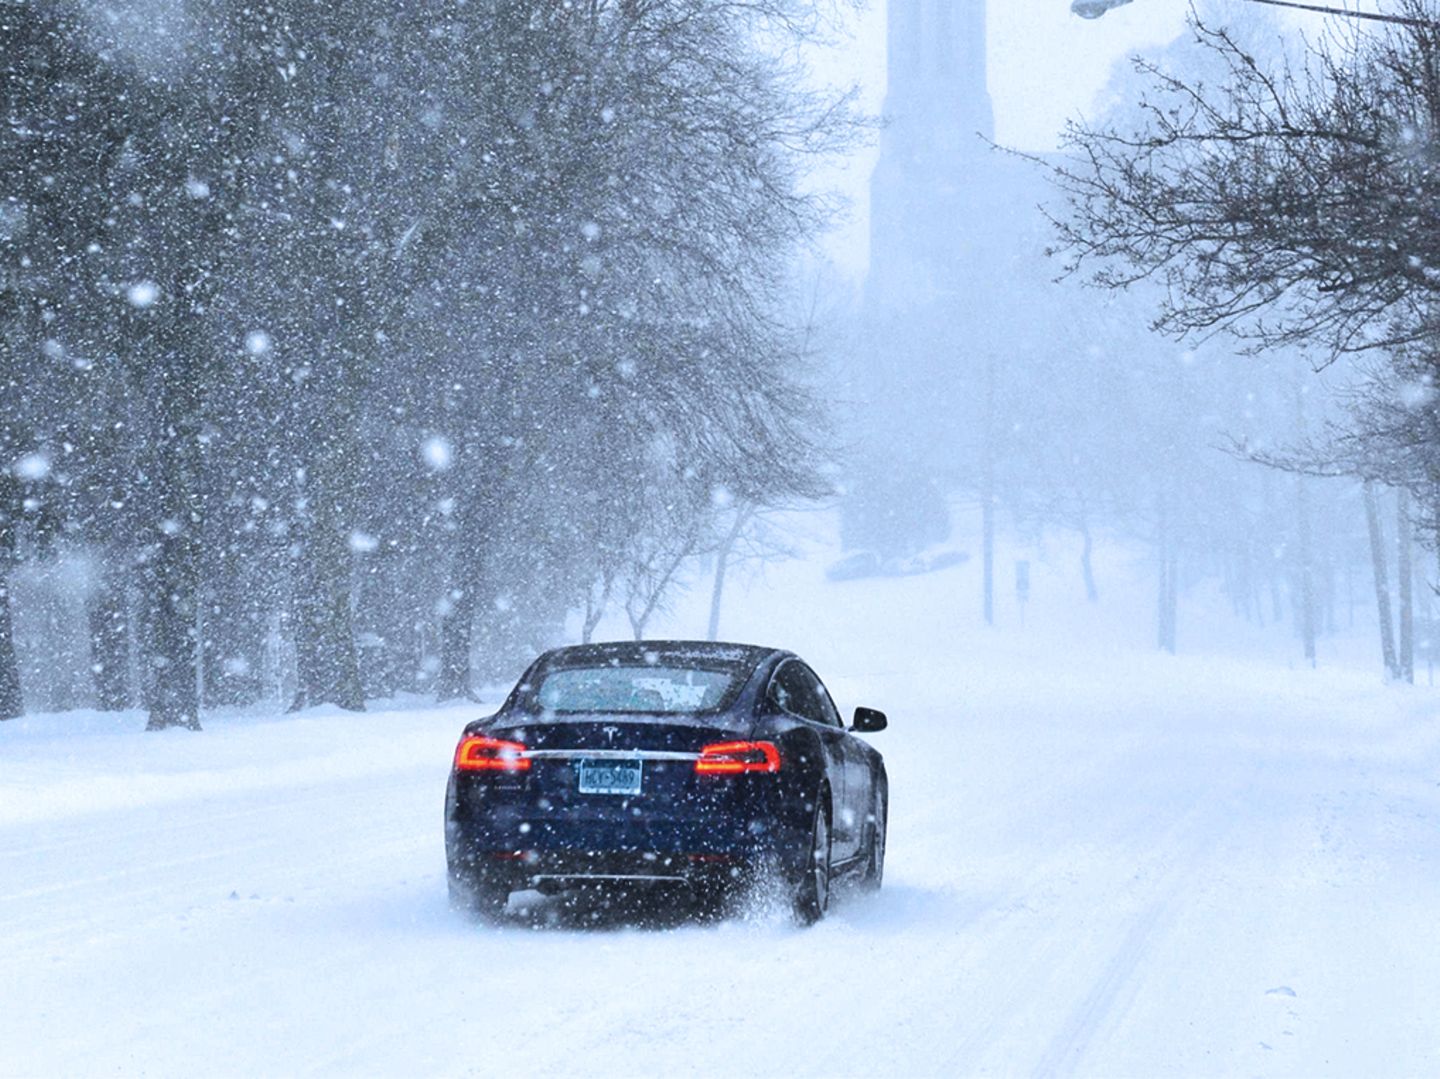 Autofahrtipps für den Winter – Sicher bei Eis und Schnee